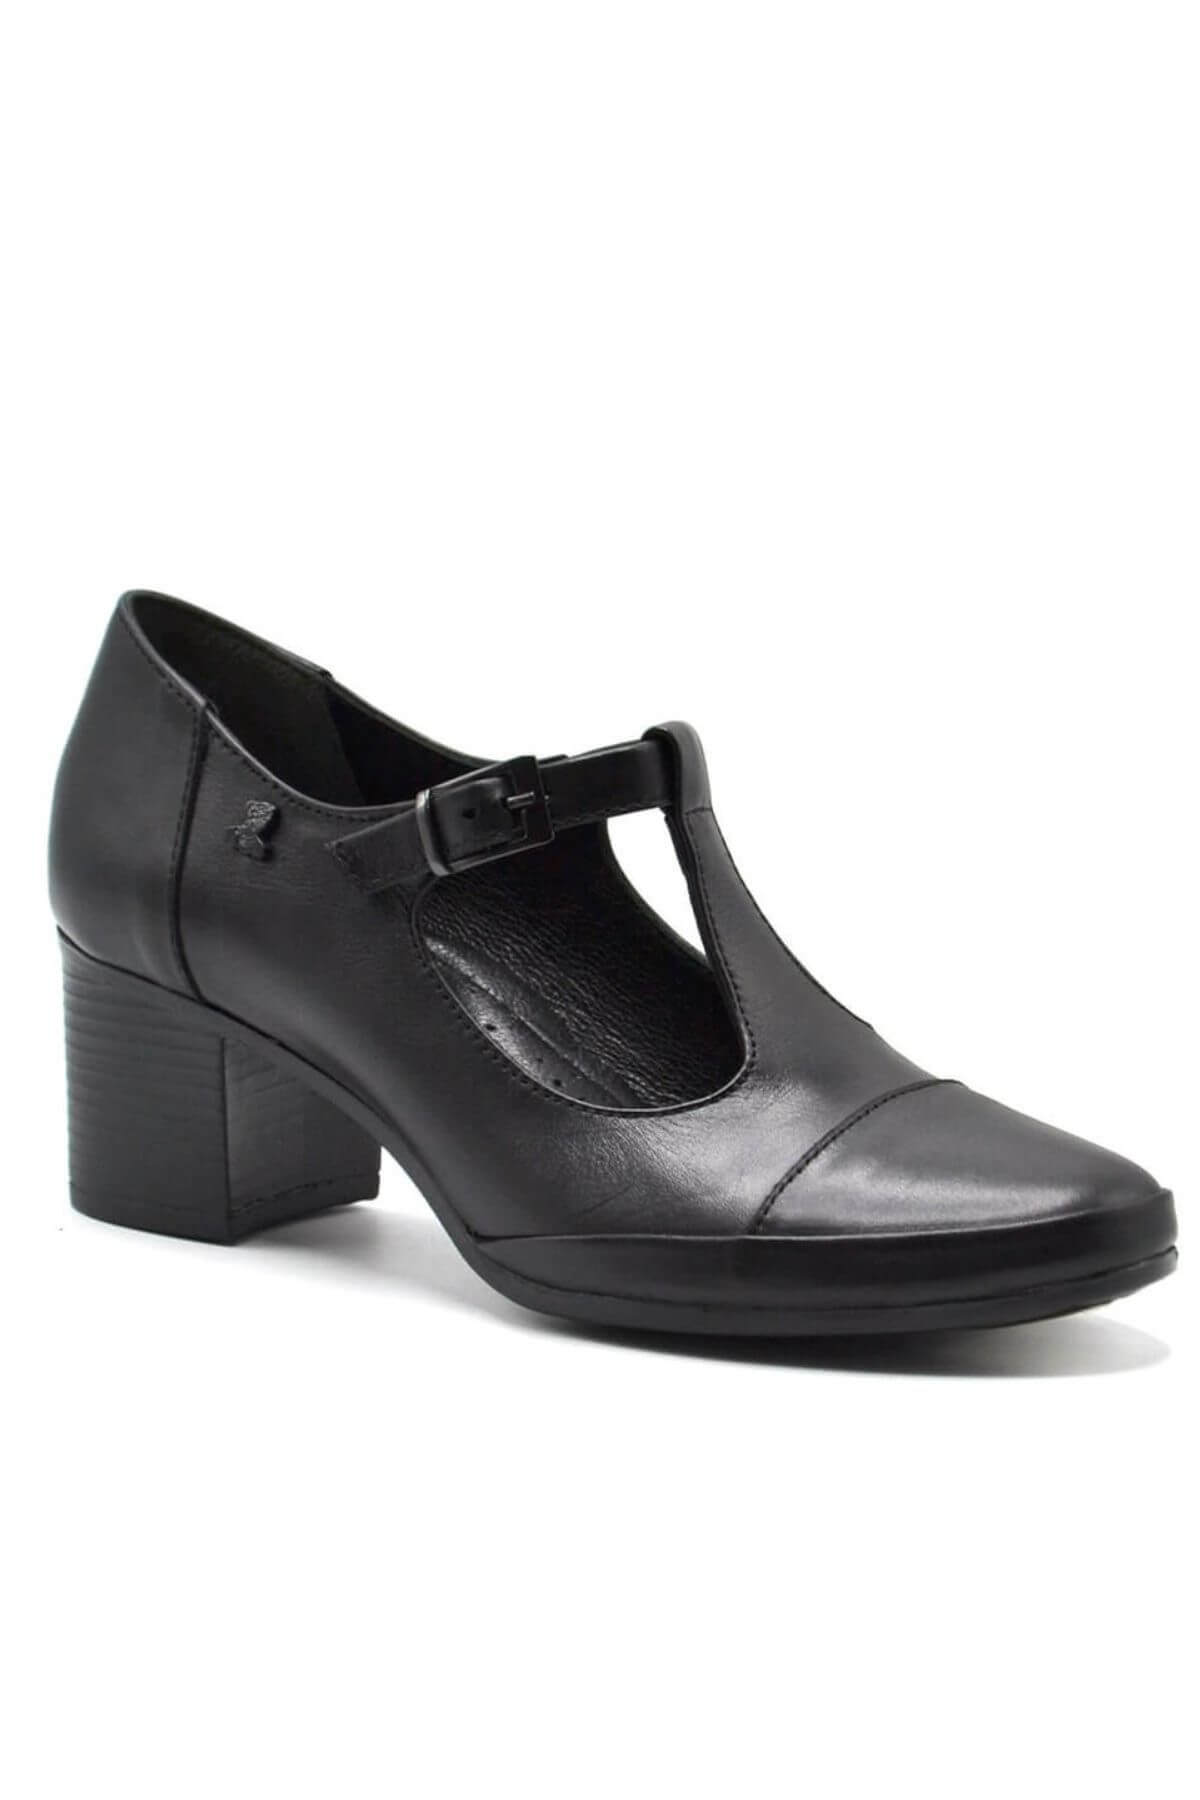 Kadın Topuklu Deri Ayakkabı Siyah 1911954K